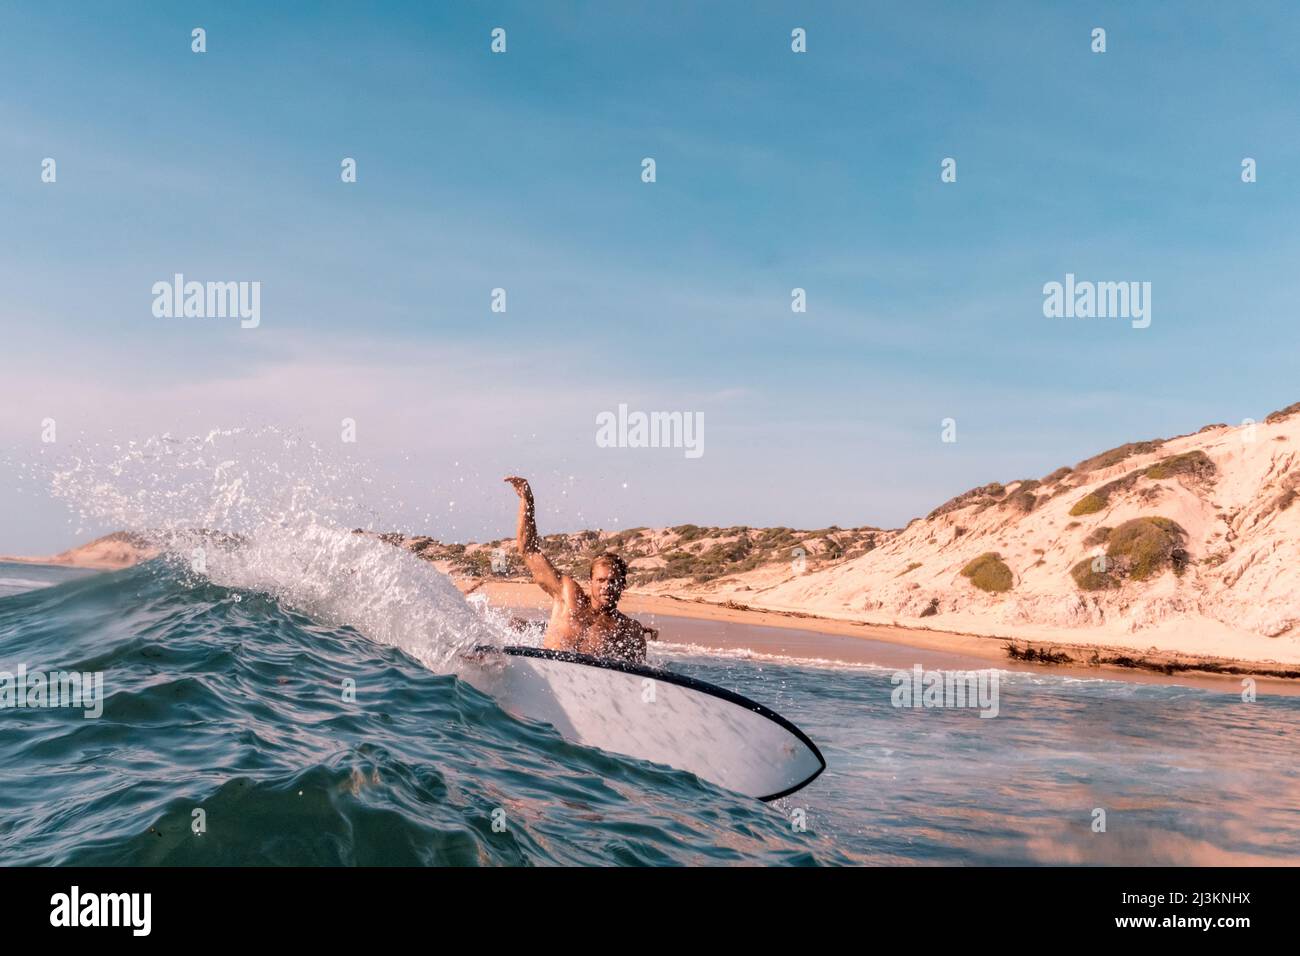 Portrait d'un surfeur sur les vagues sur le cap est de la péninsule de Baja; Cabo San Lucas, Baja California sur, Mexique Banque D'Images